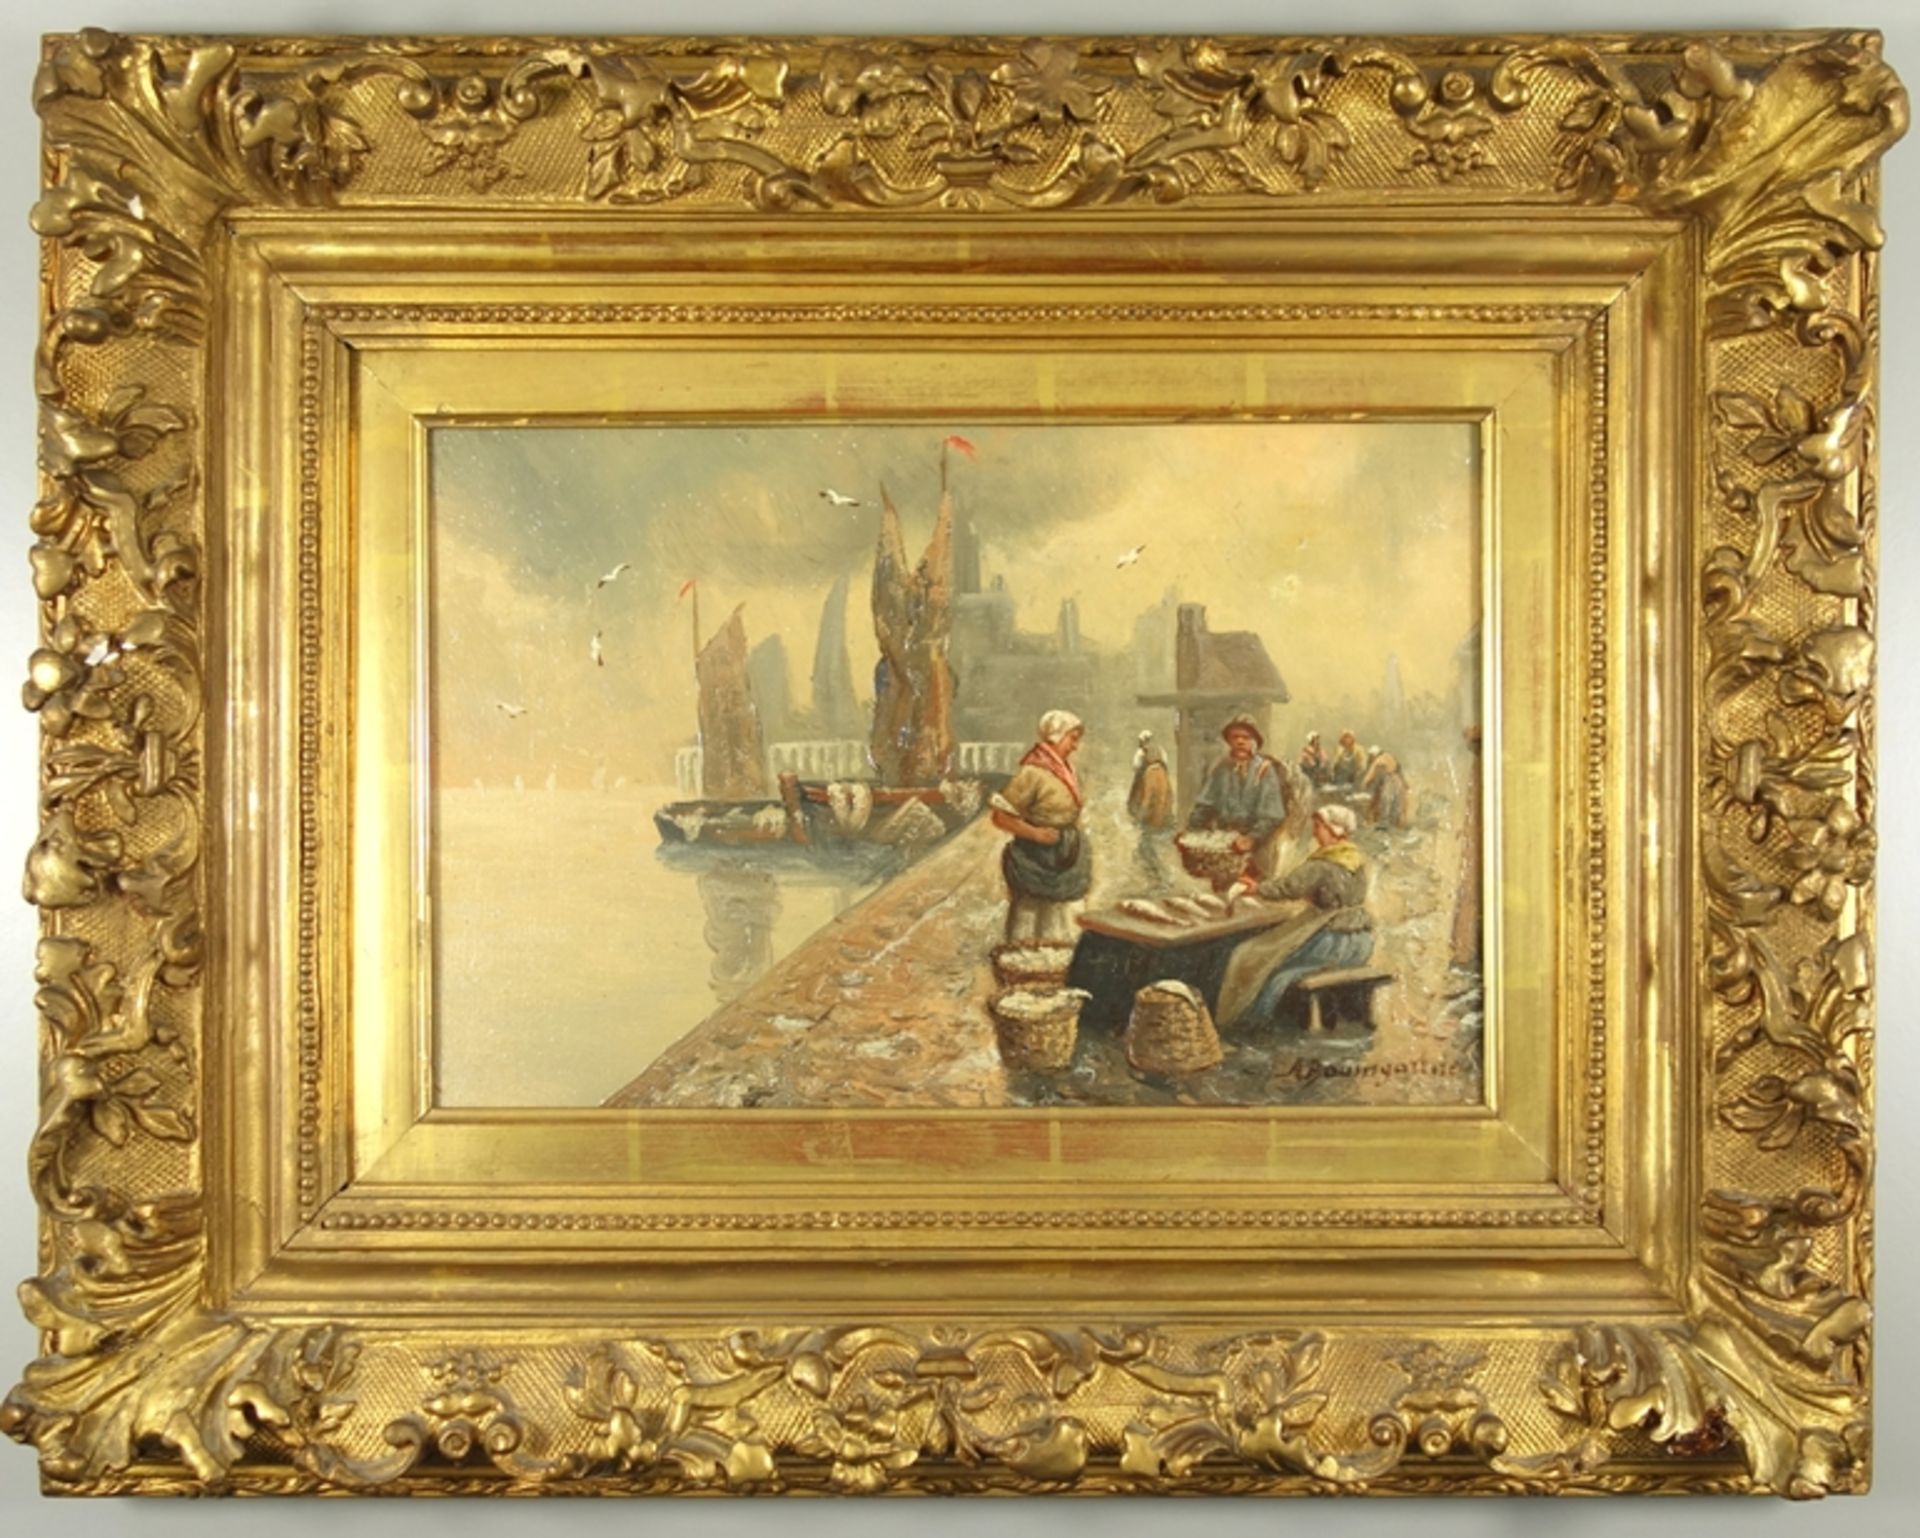 Adolf Baumgartner-Stoiloff (1850, Linz-1924, Wien), "Fischmarkt am Hafen", Öl/L